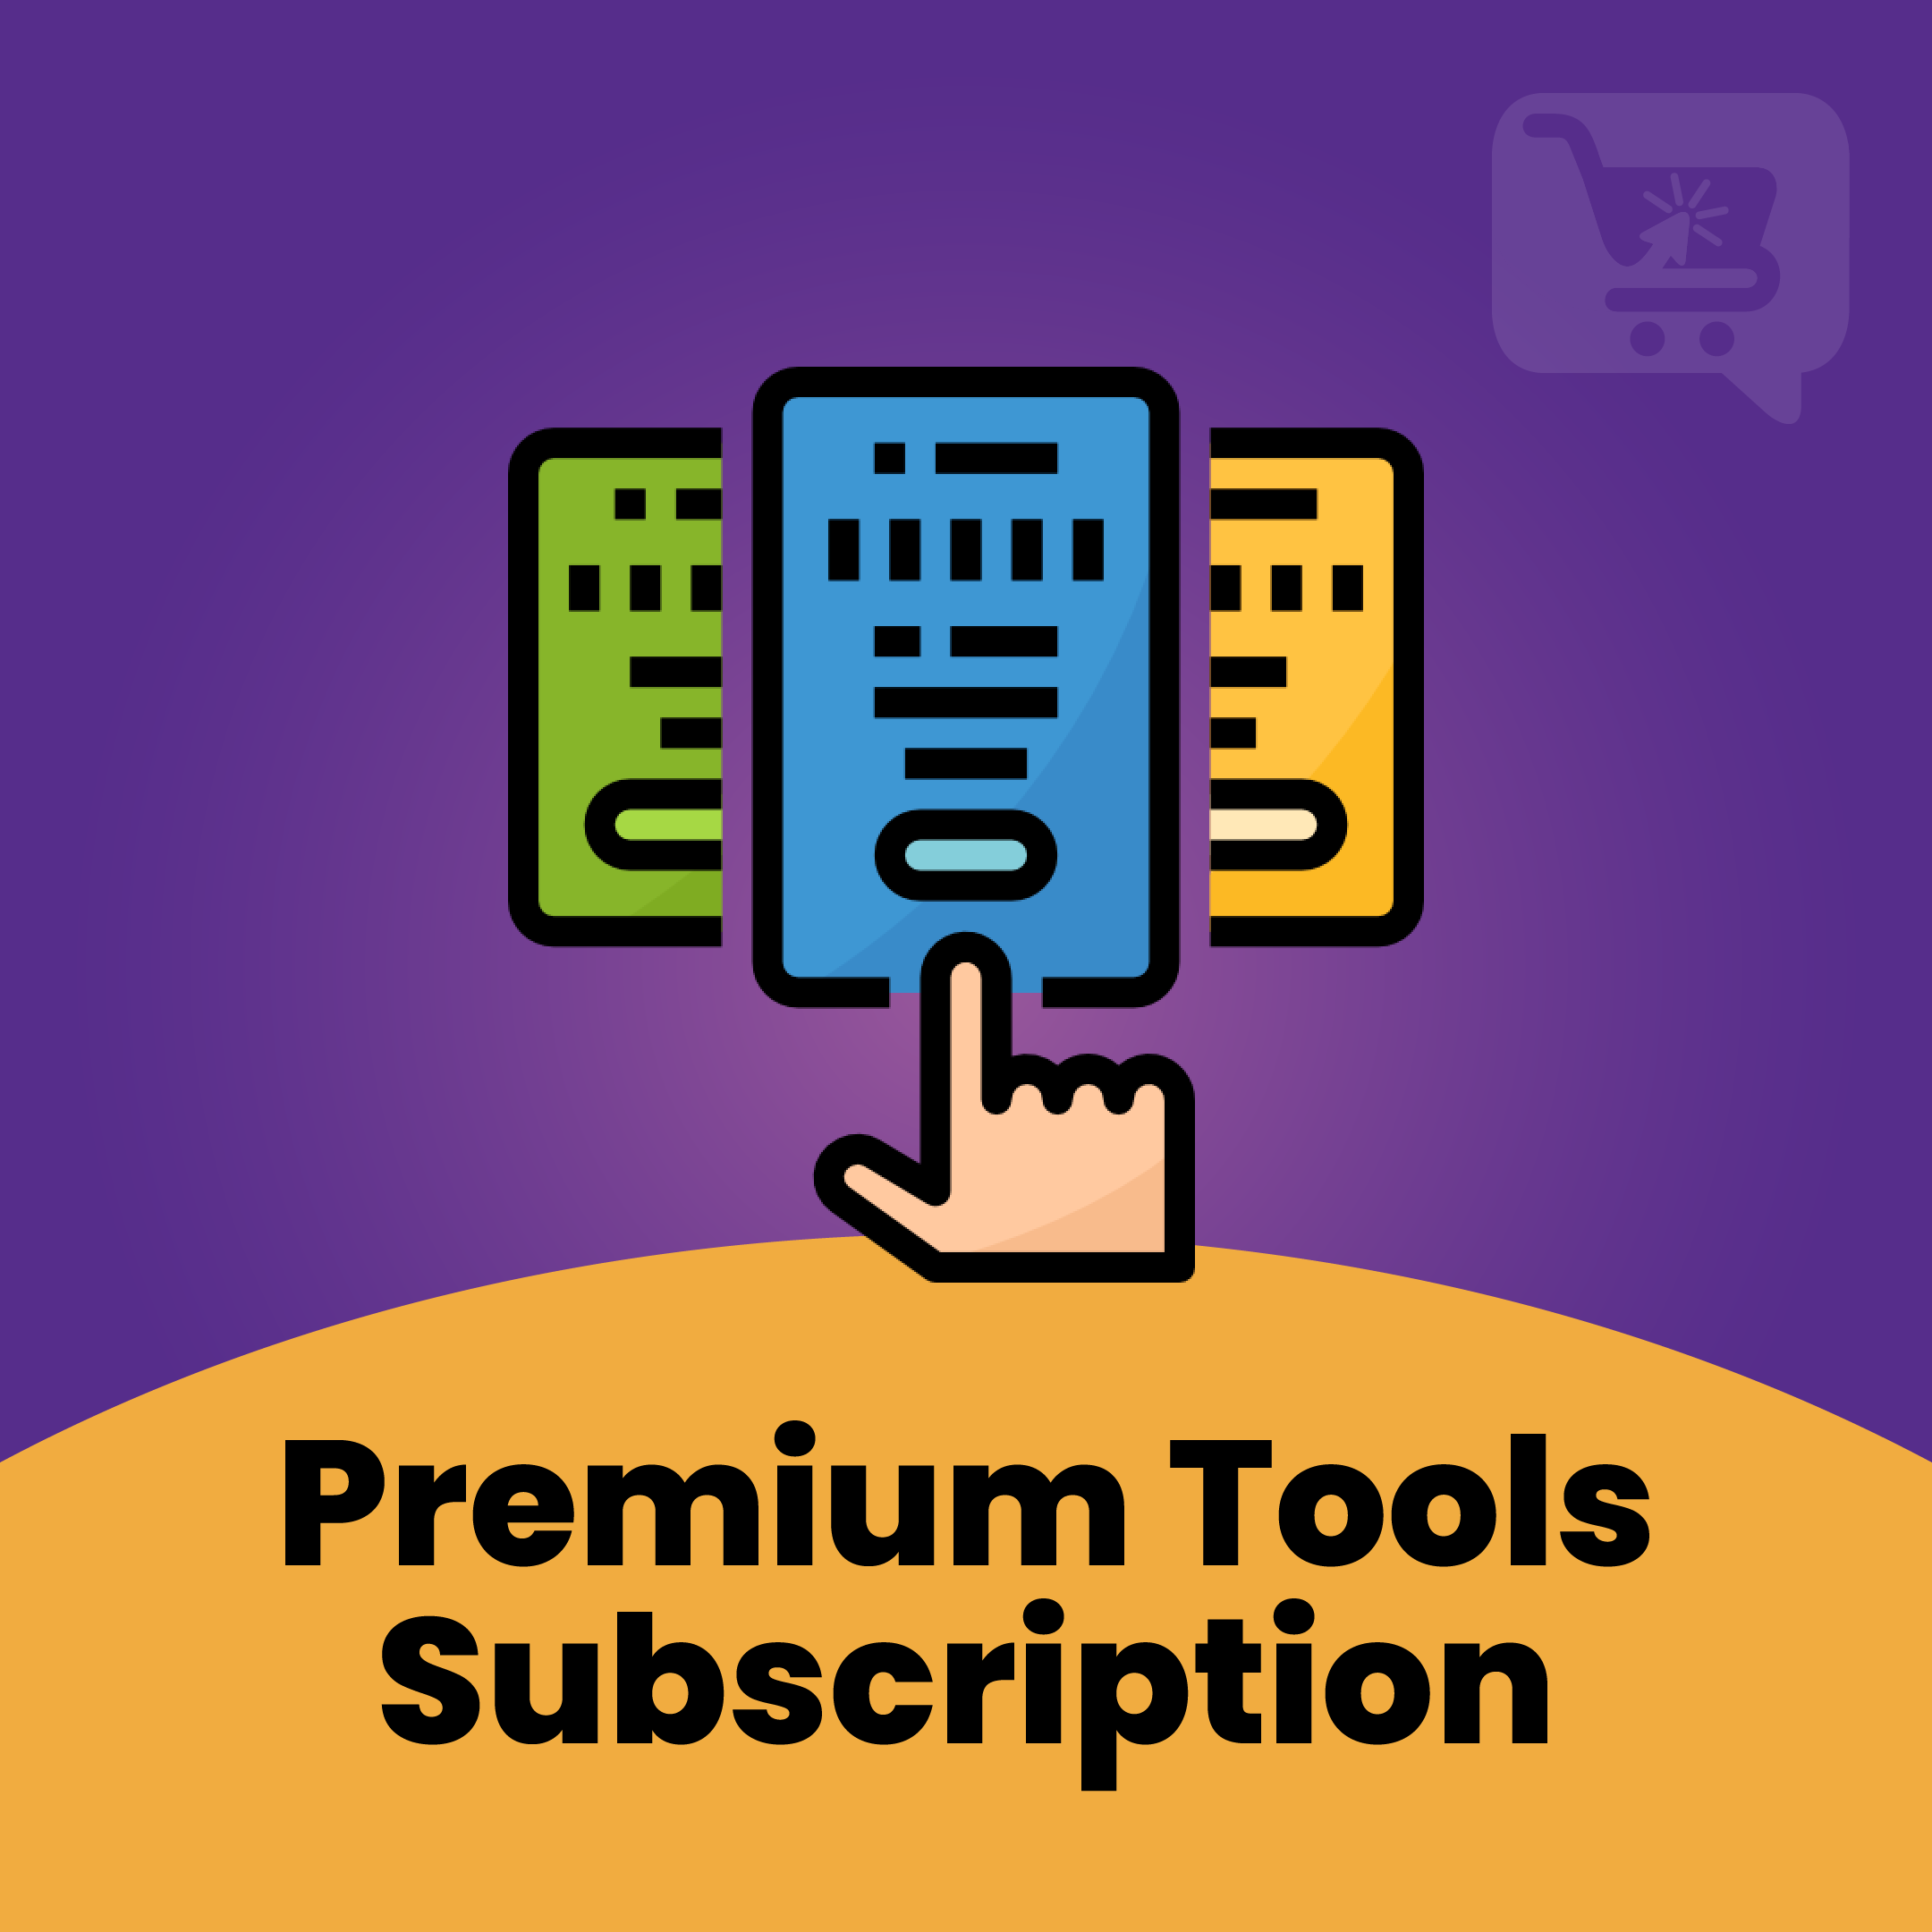 Premium Tools Subscription